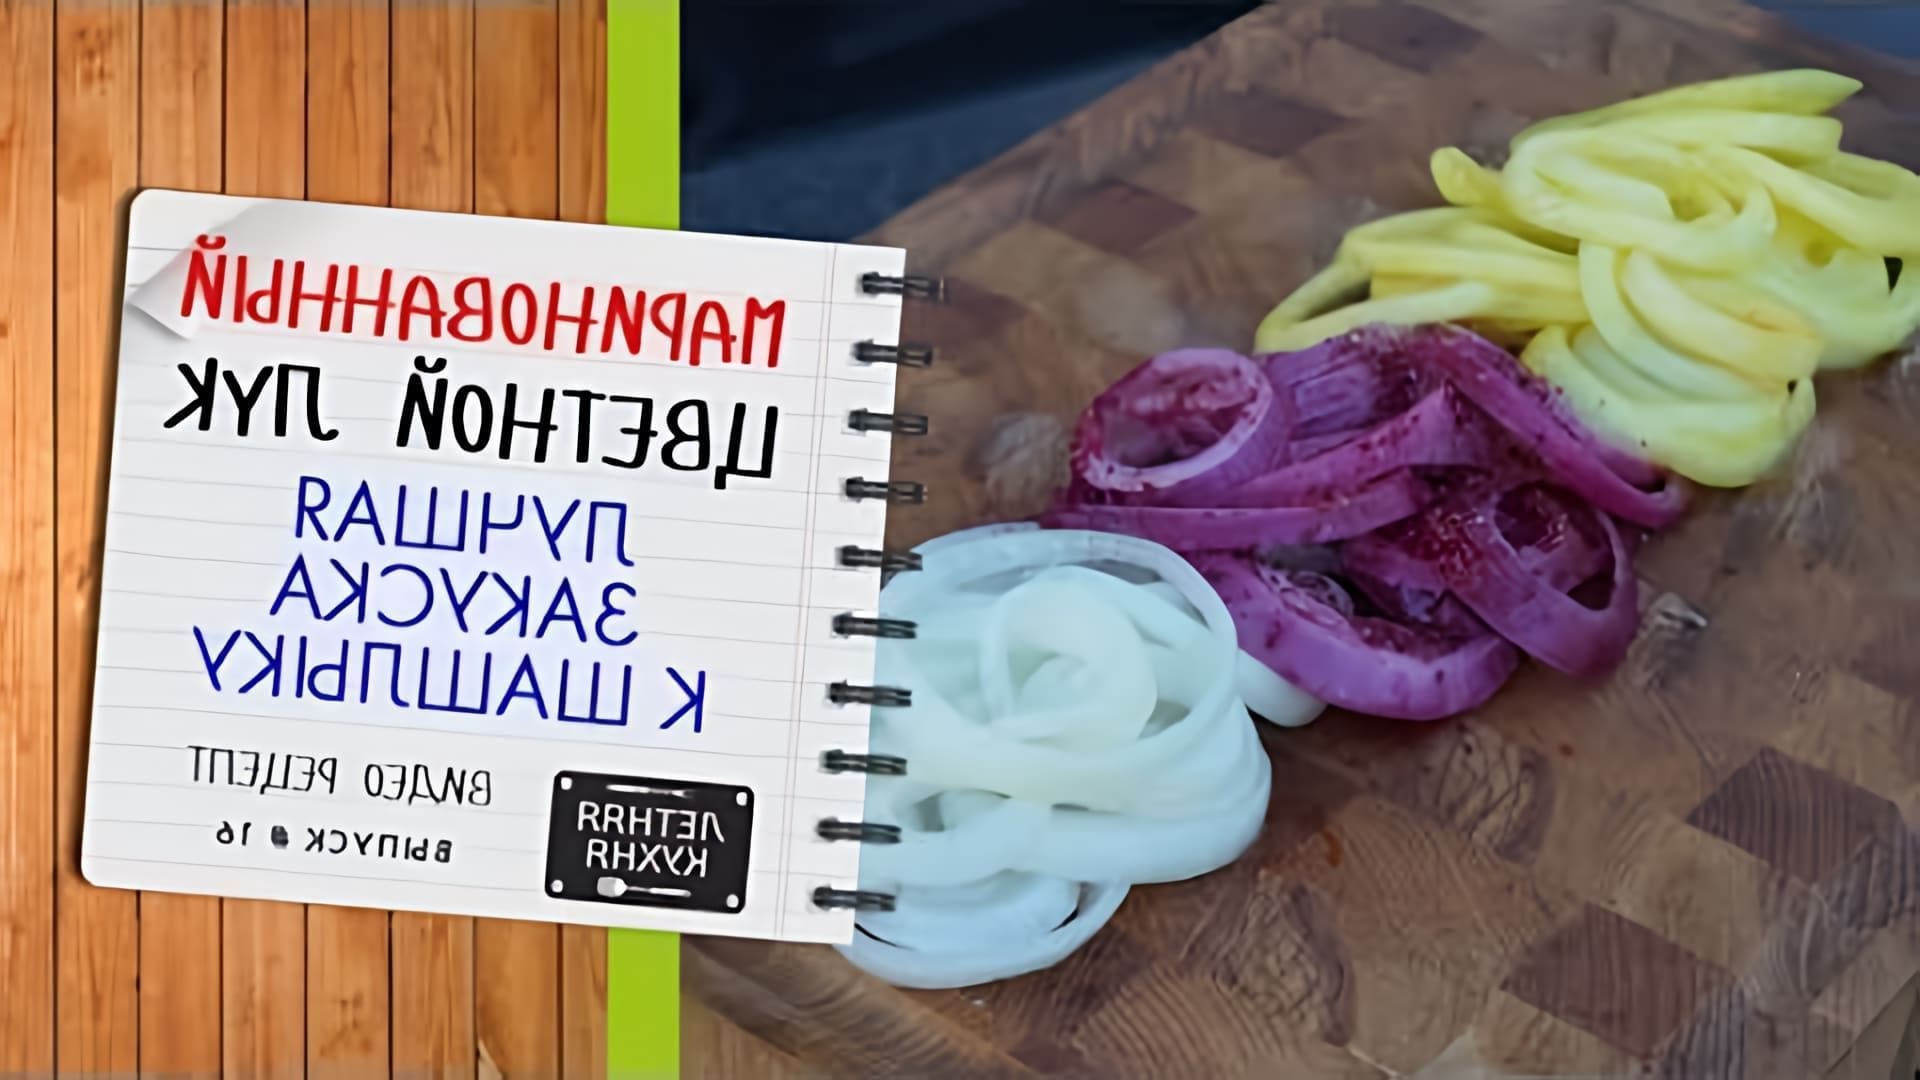 В этом видео демонстрируется рецепт приготовления цветного маринованного лука, который является отличной закуской к шашлыку